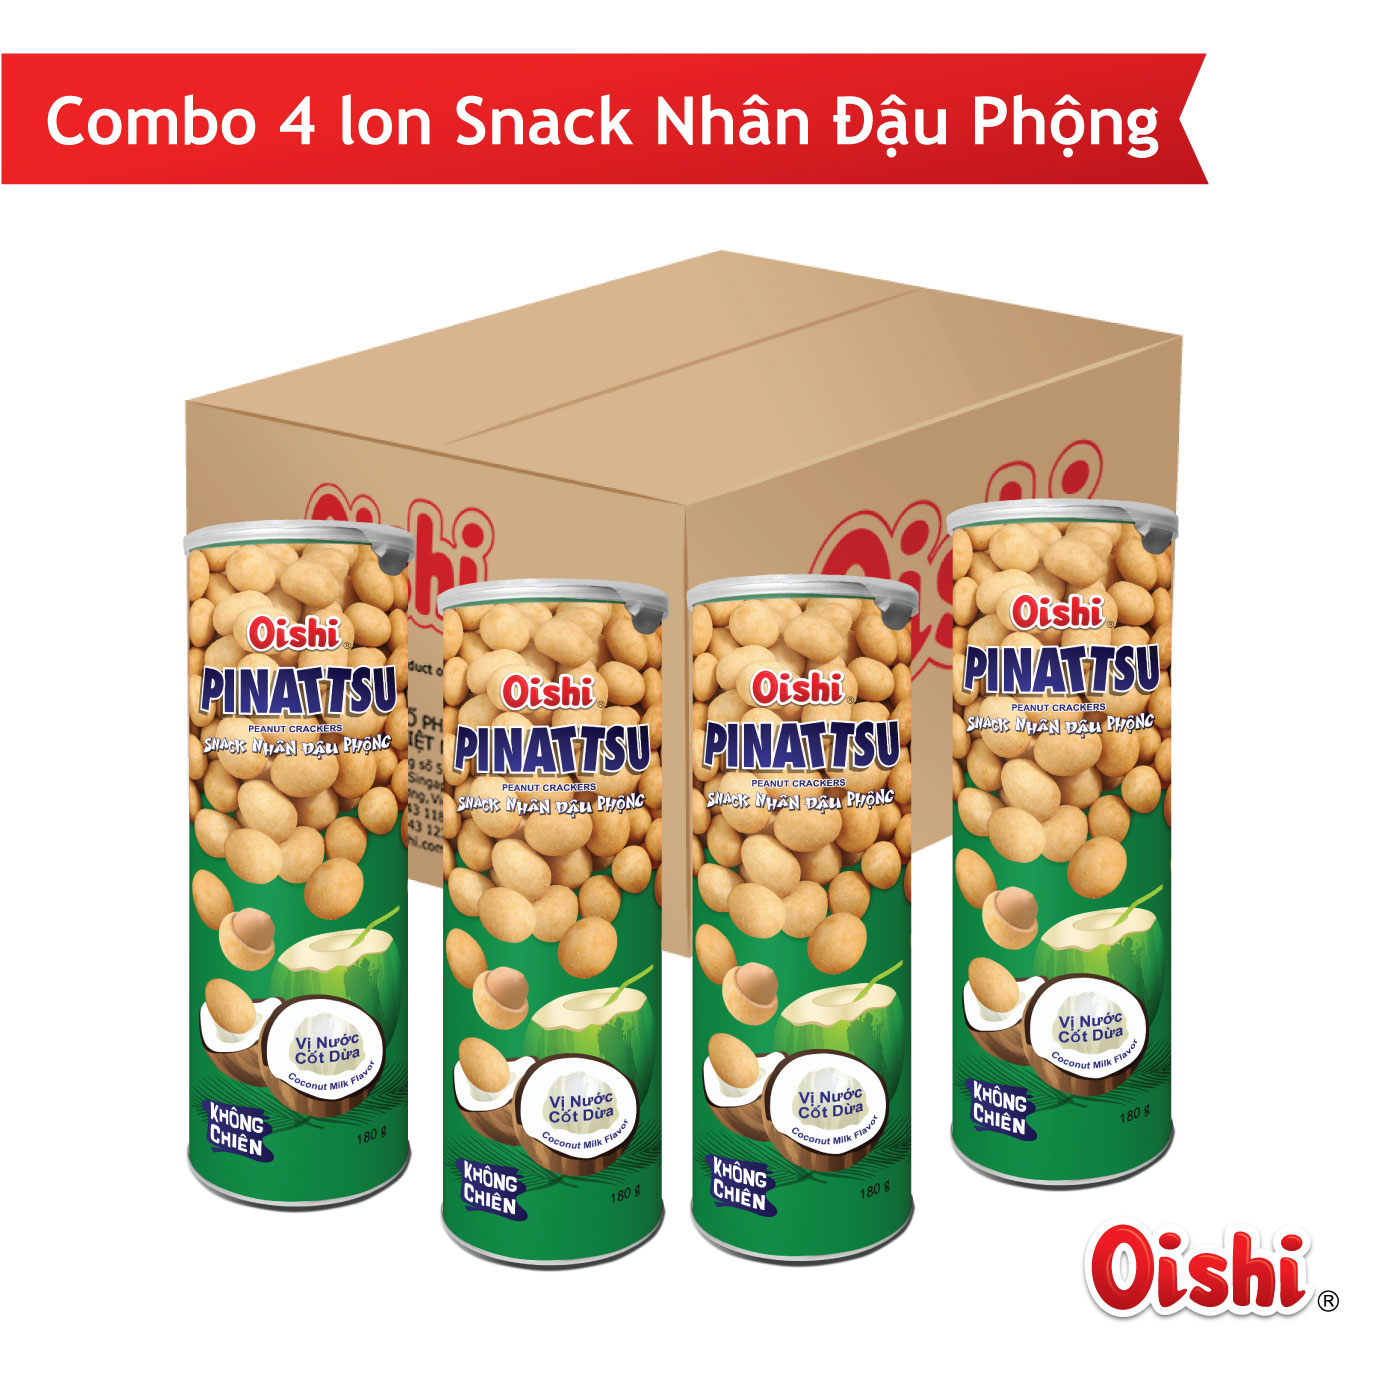 Combo 4 lon Snack Nhân Đậu Phộng Vị Nước Cốt Dừa - 180gr lon